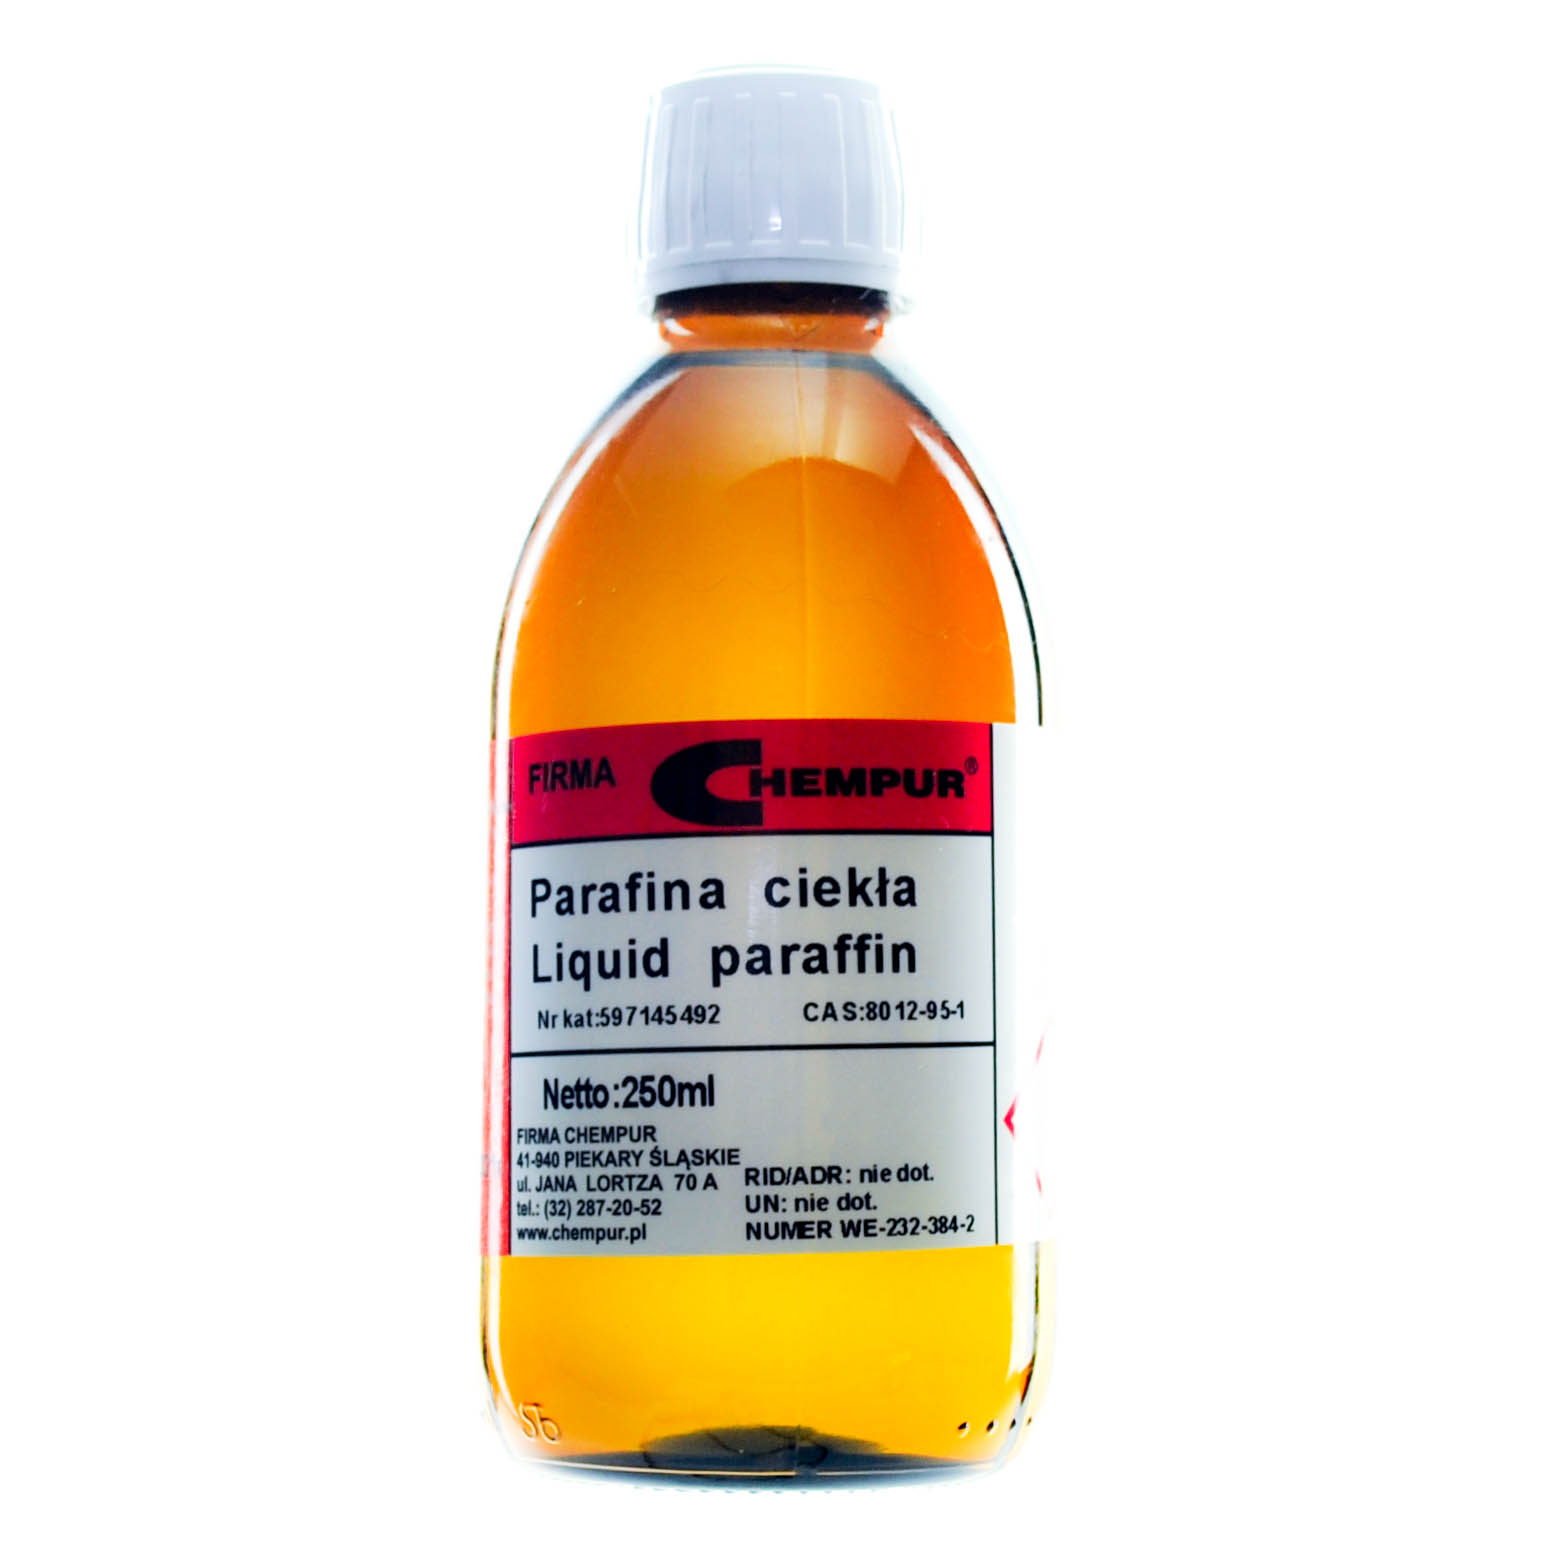 Liquid paraffin